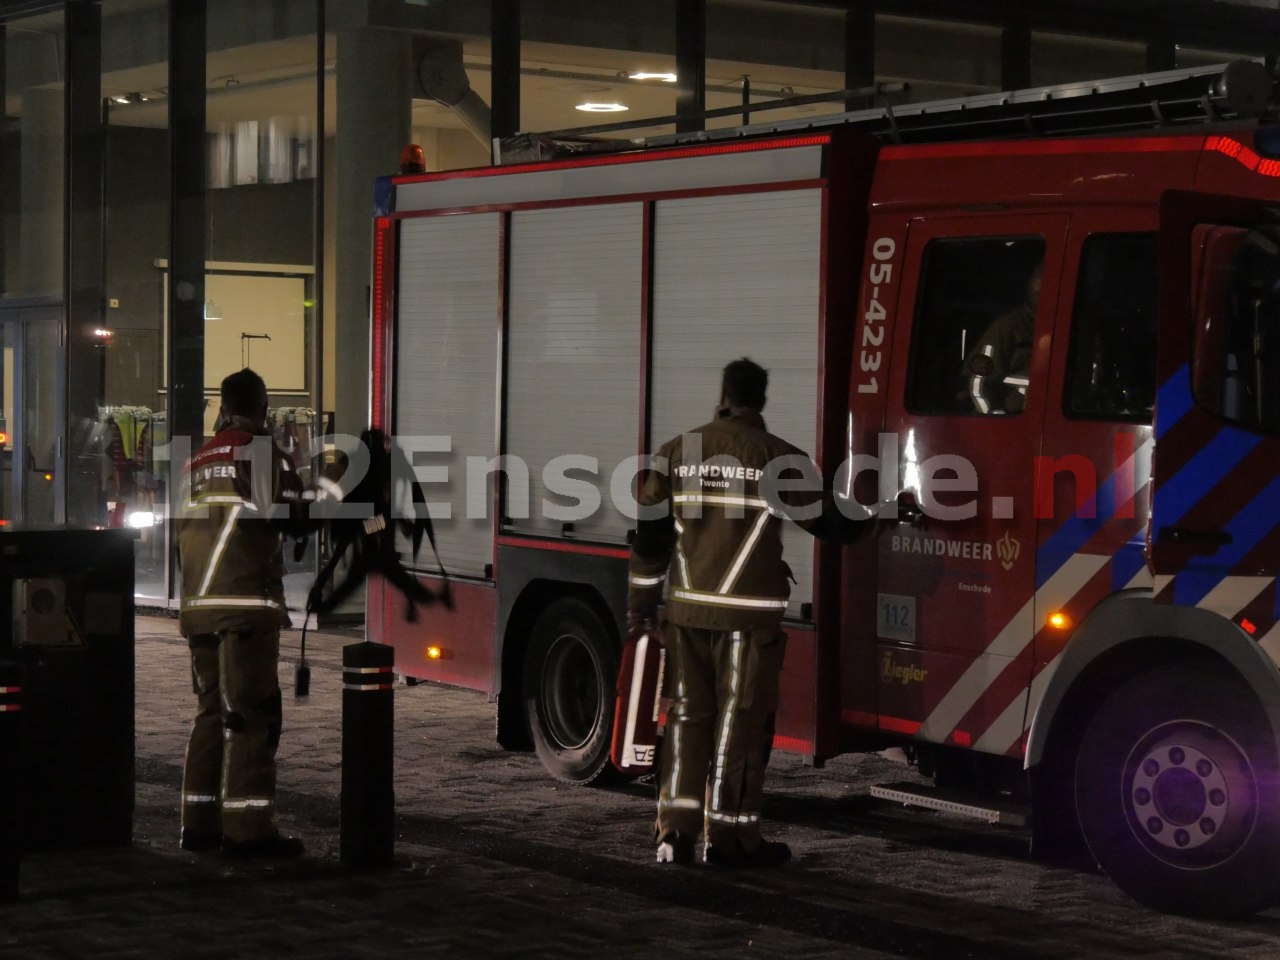 UPDATE: Brand bij Saxion school Enschede; school gesloten